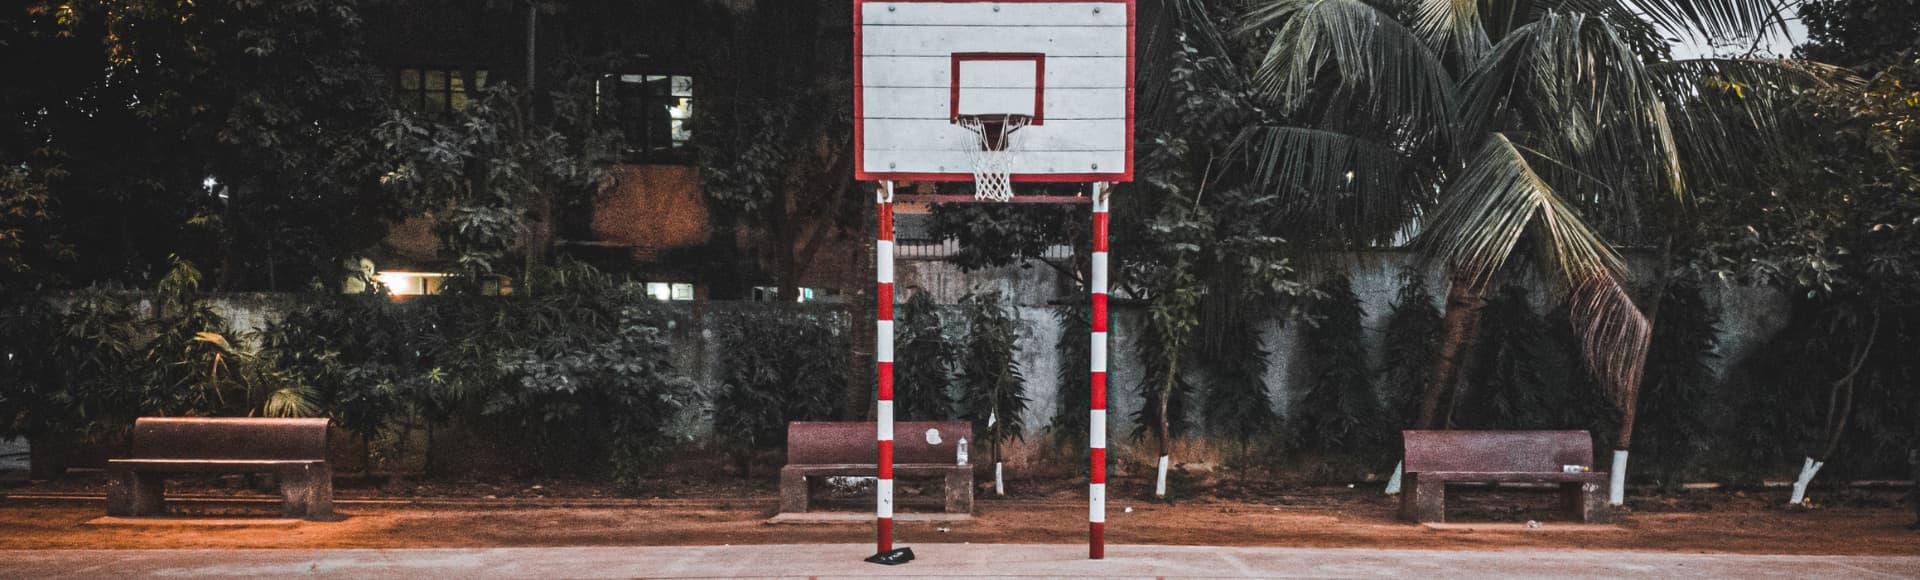 Outdoor Basketballplatz mit Palmen